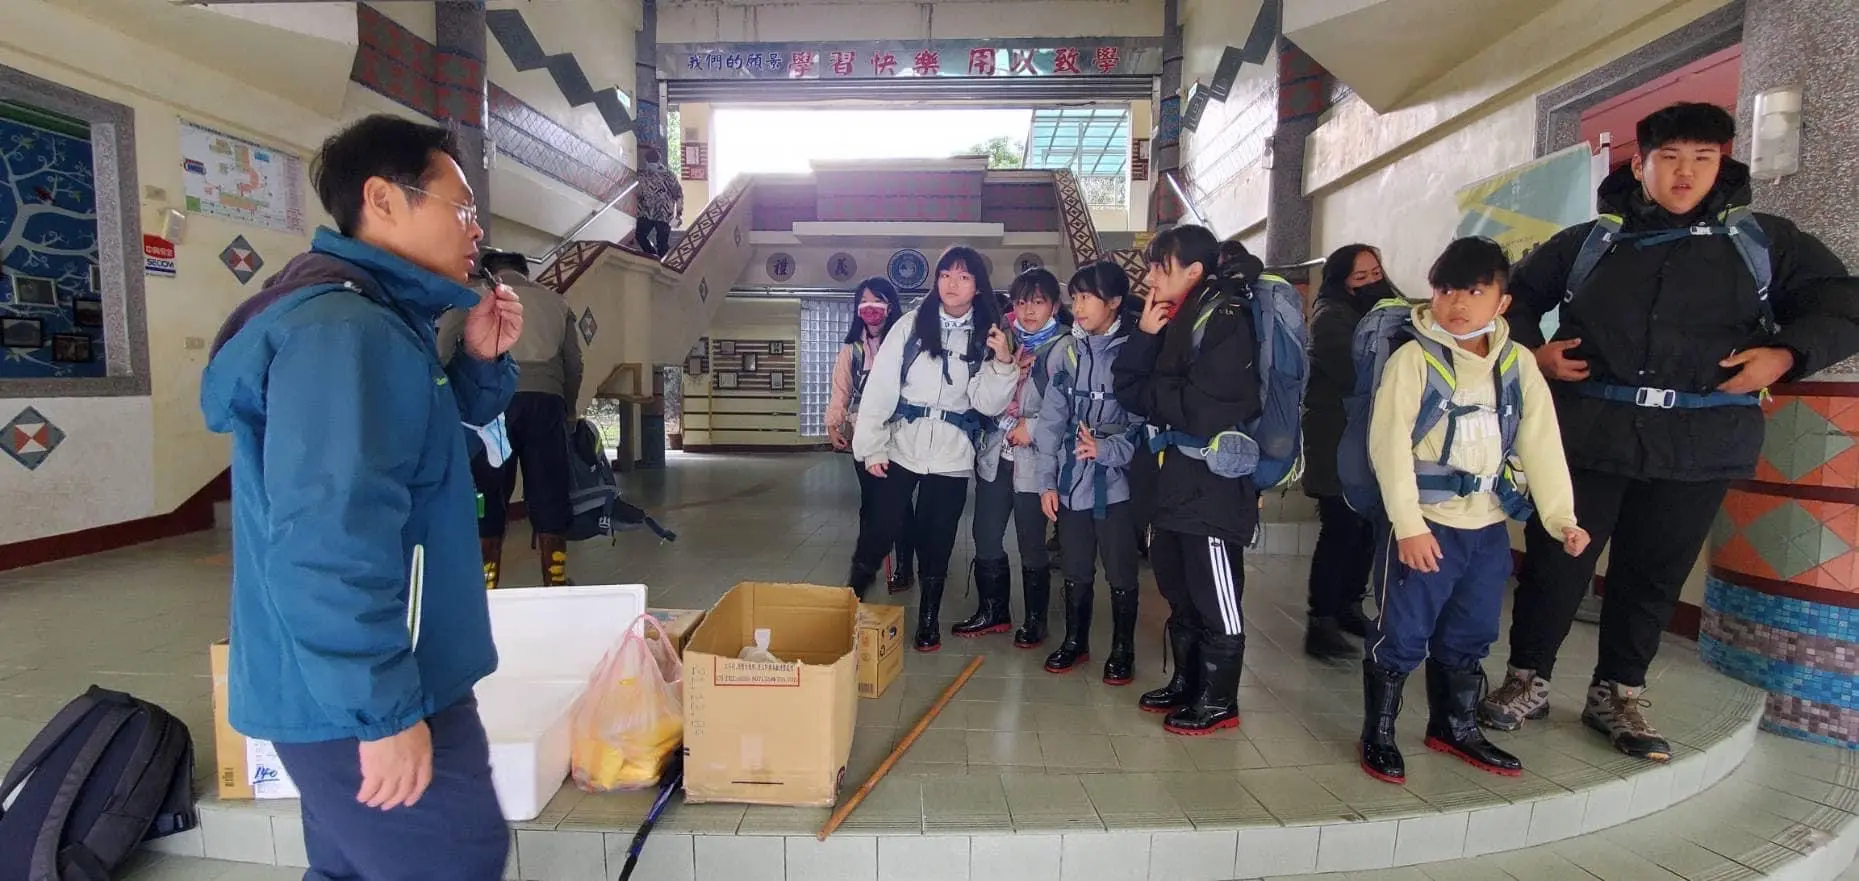 正安禮儀公司於新竹縣尖石鄉新樂國民小學發放雨鞋與禦寒外套